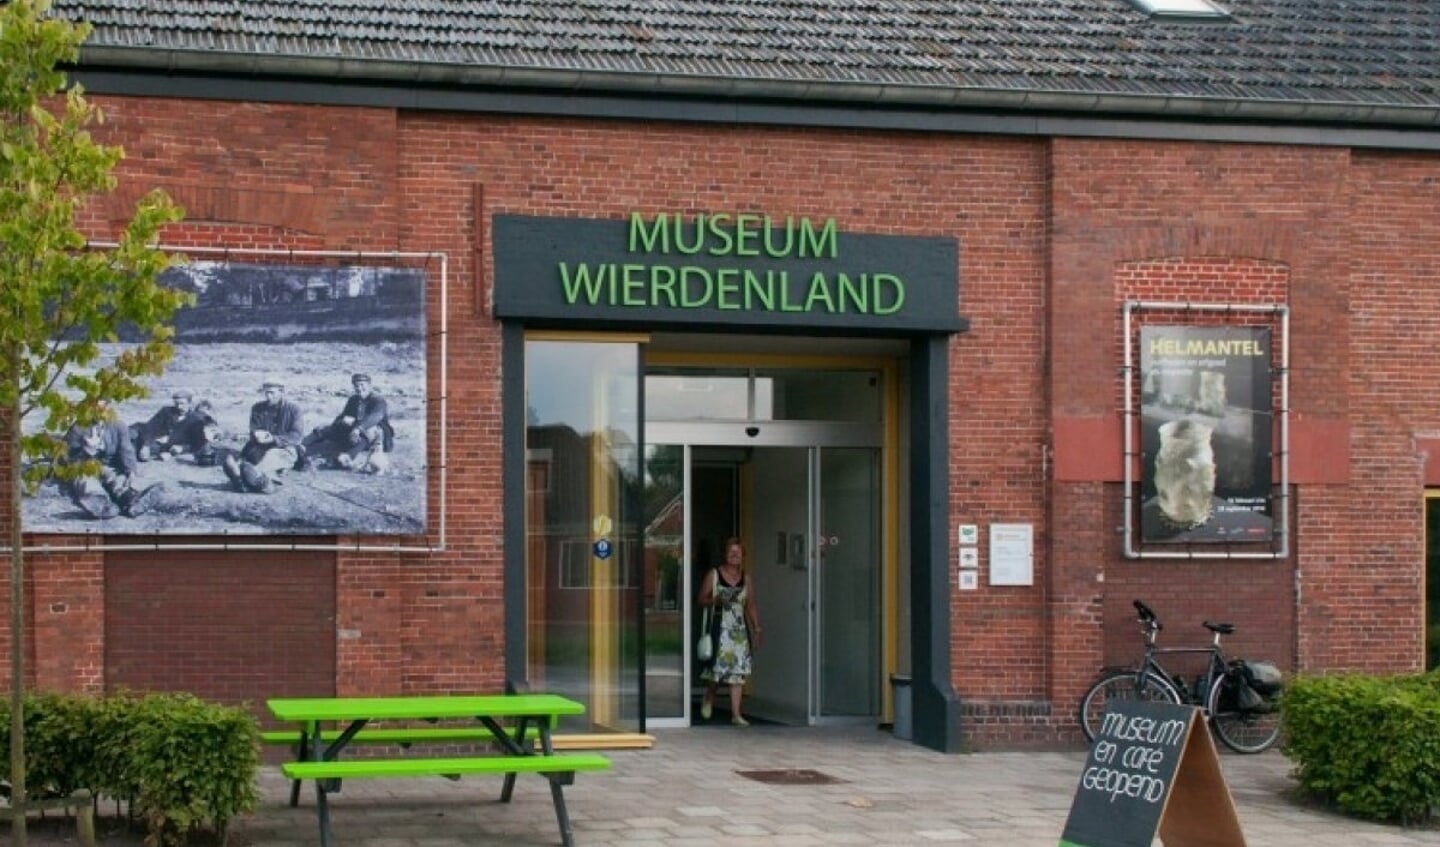 Museum Wierdenland in Ezinge.